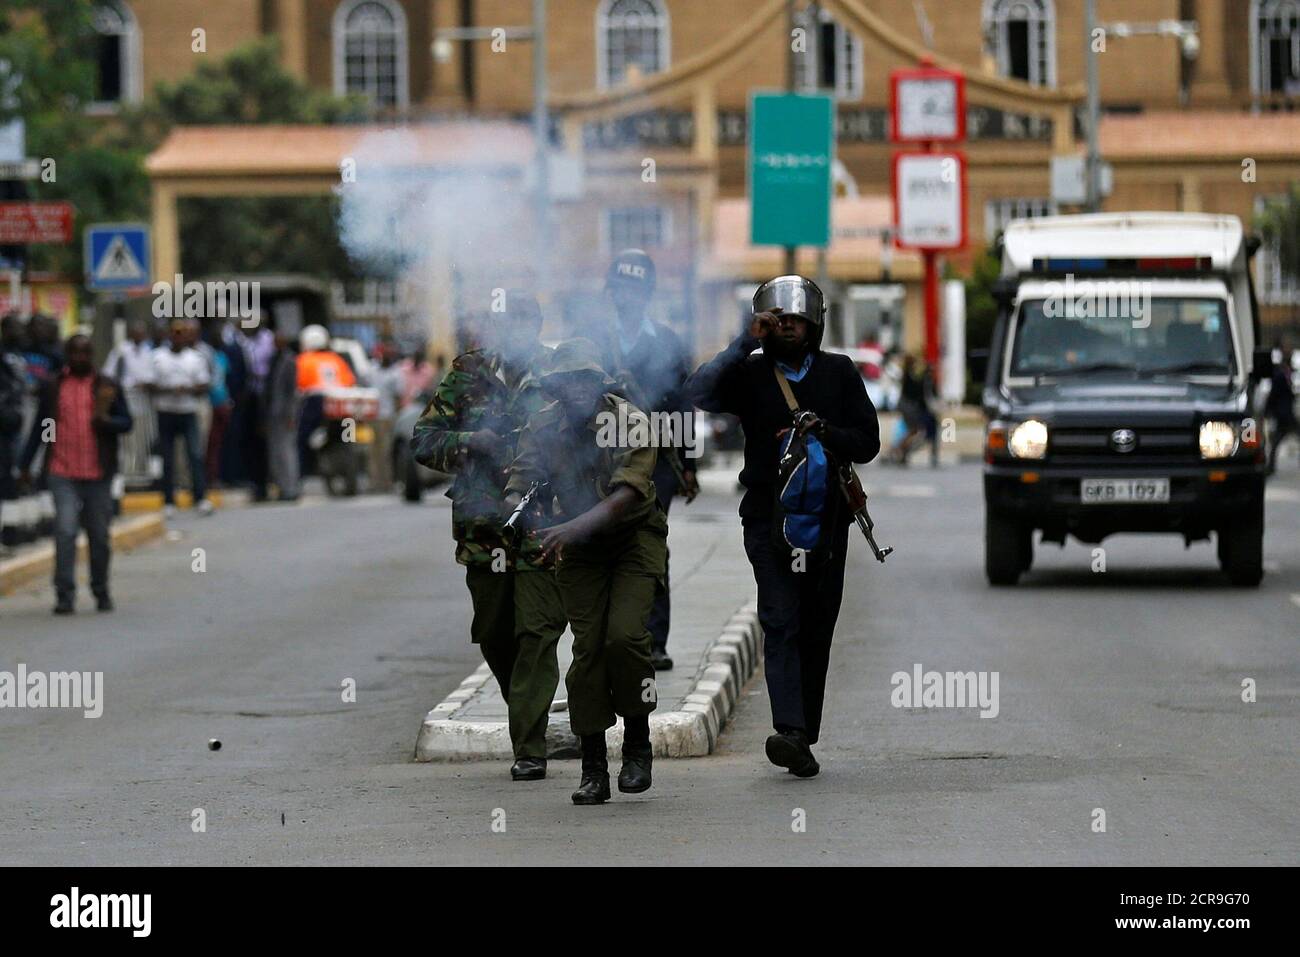 Los policías antidisturbios disparan gases lacrimógenos para dispersar a los partidarios de la coalición de la oposición keniana National Super Alliance (NASA) durante una protesta a lo largo de una calle en Nairobi, Kenia, el 24 de octubre de 2017. REUTERS/Thomas Mukoya Foto de stock